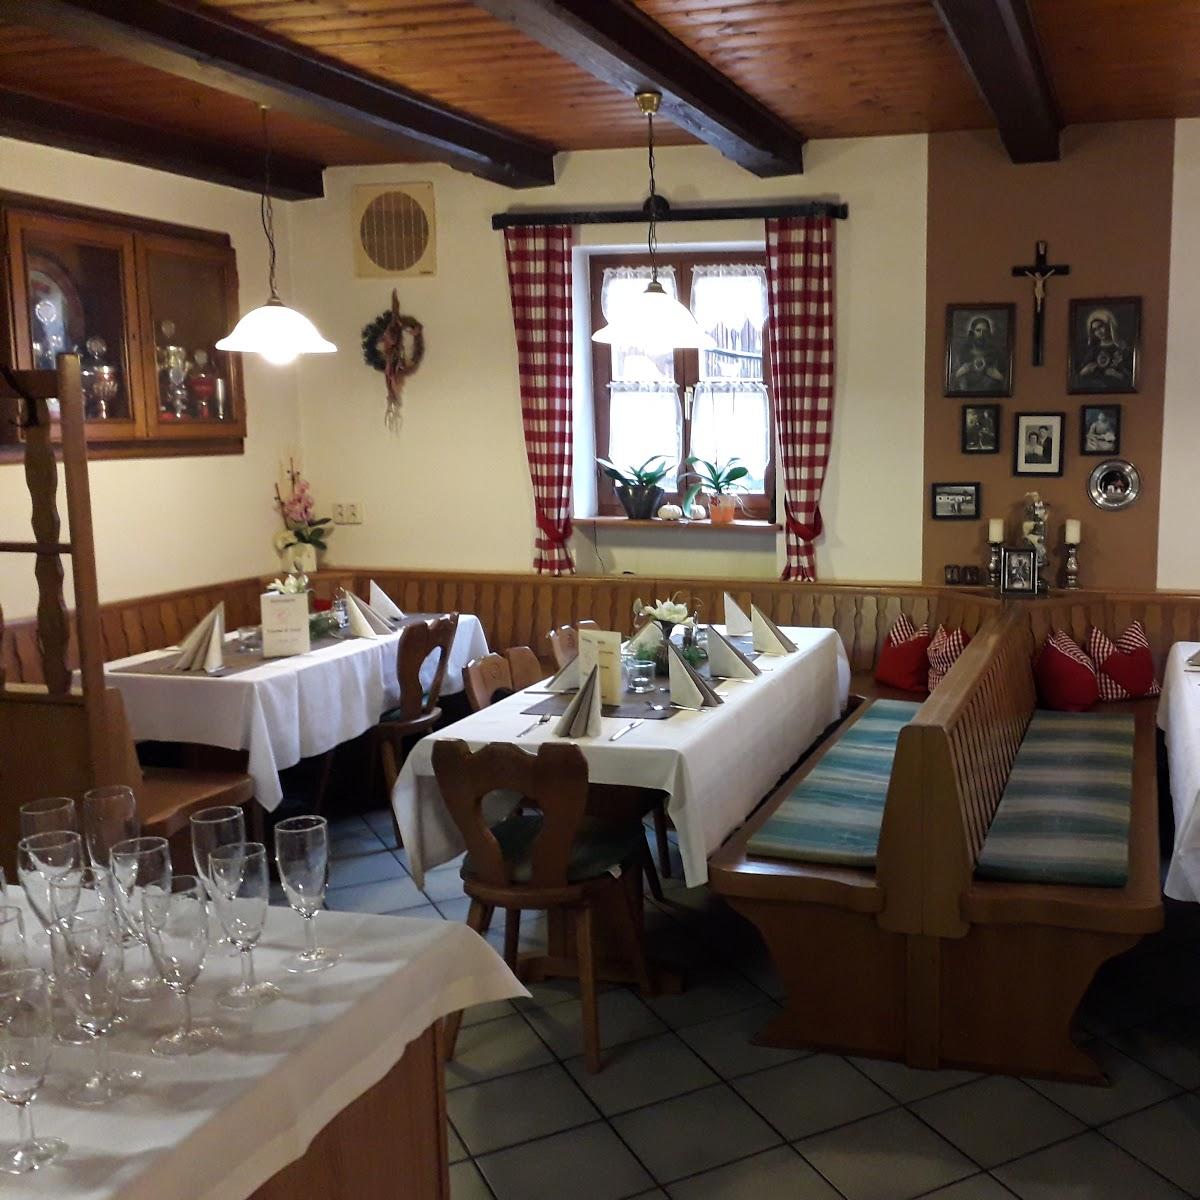 Restaurant "Metzerwirt" in  Hurlach